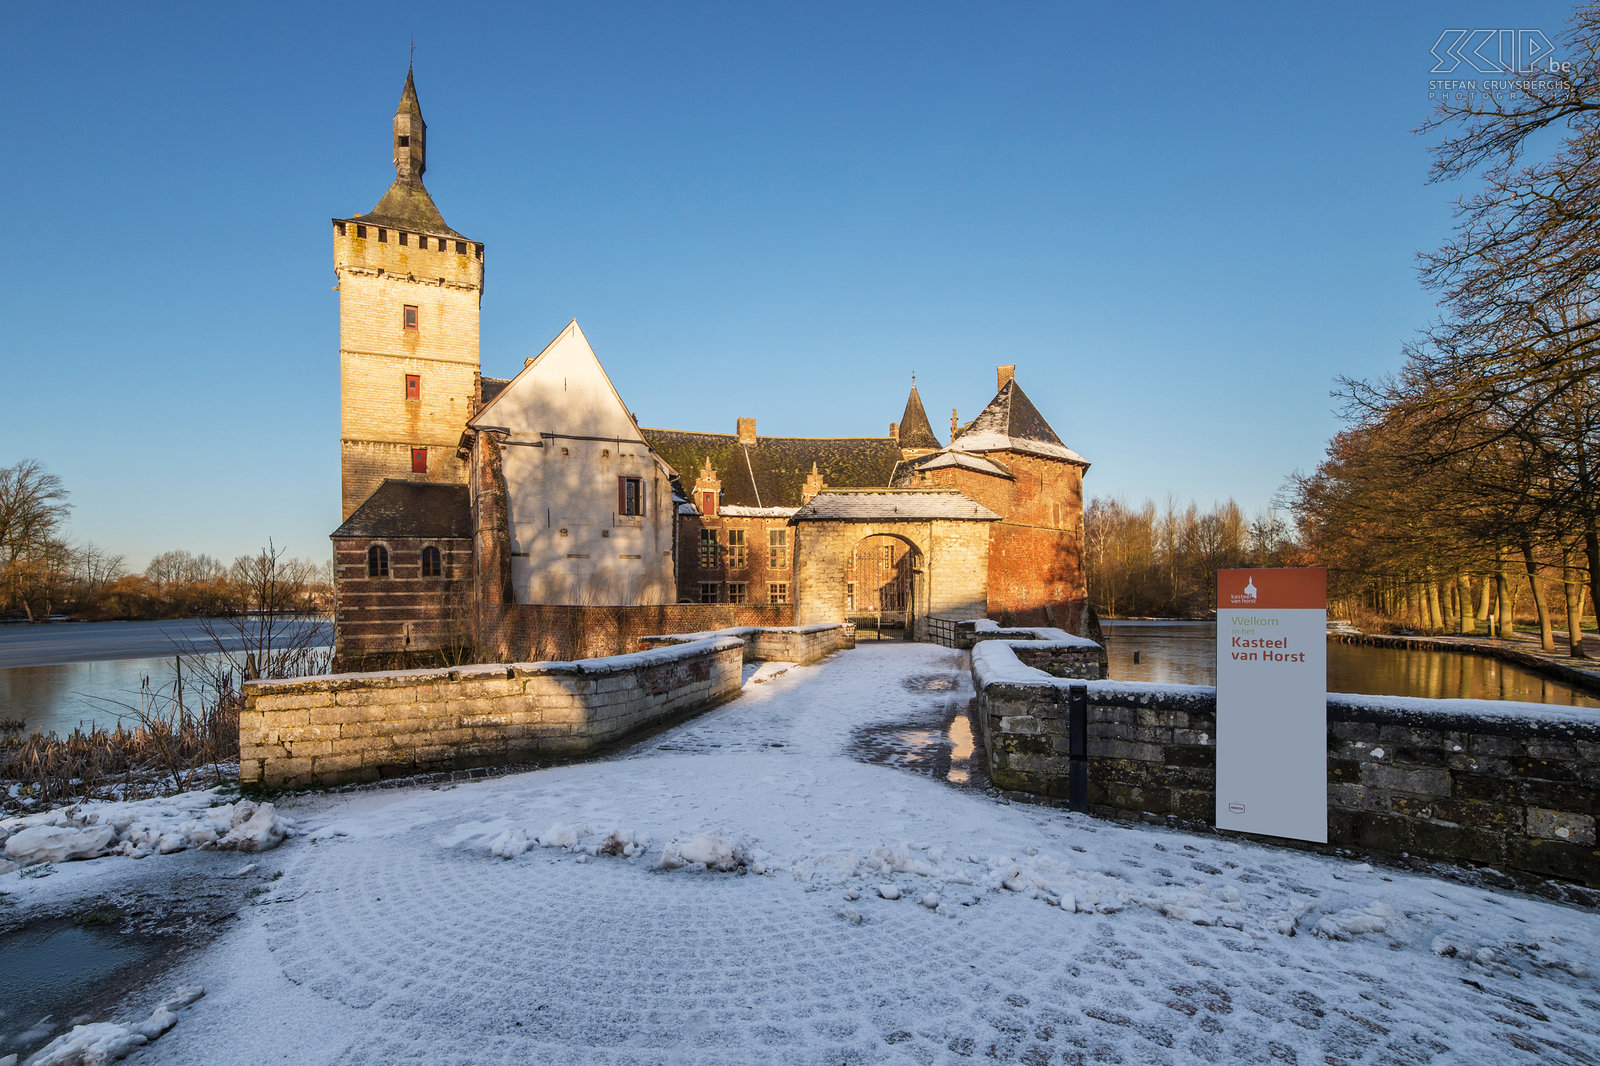 Winter in Sint-Pieters-Rode - Kasteel van Horst Foto’s van het nabijgelegen kasteel van Horst tijdens de winter. Het kasteel van Horst is gelegen in Sint-Pieters-Rode. Het kasteel werd gebouwd in het midden van de 14e eeuw en is nog steeds heel authentiek. De voormalige woonkamers, gemaakt van baksteen en zandsteen, zijn voornamelijk uit de 16e en 17e eeuw.<br />
 Stefan Cruysberghs